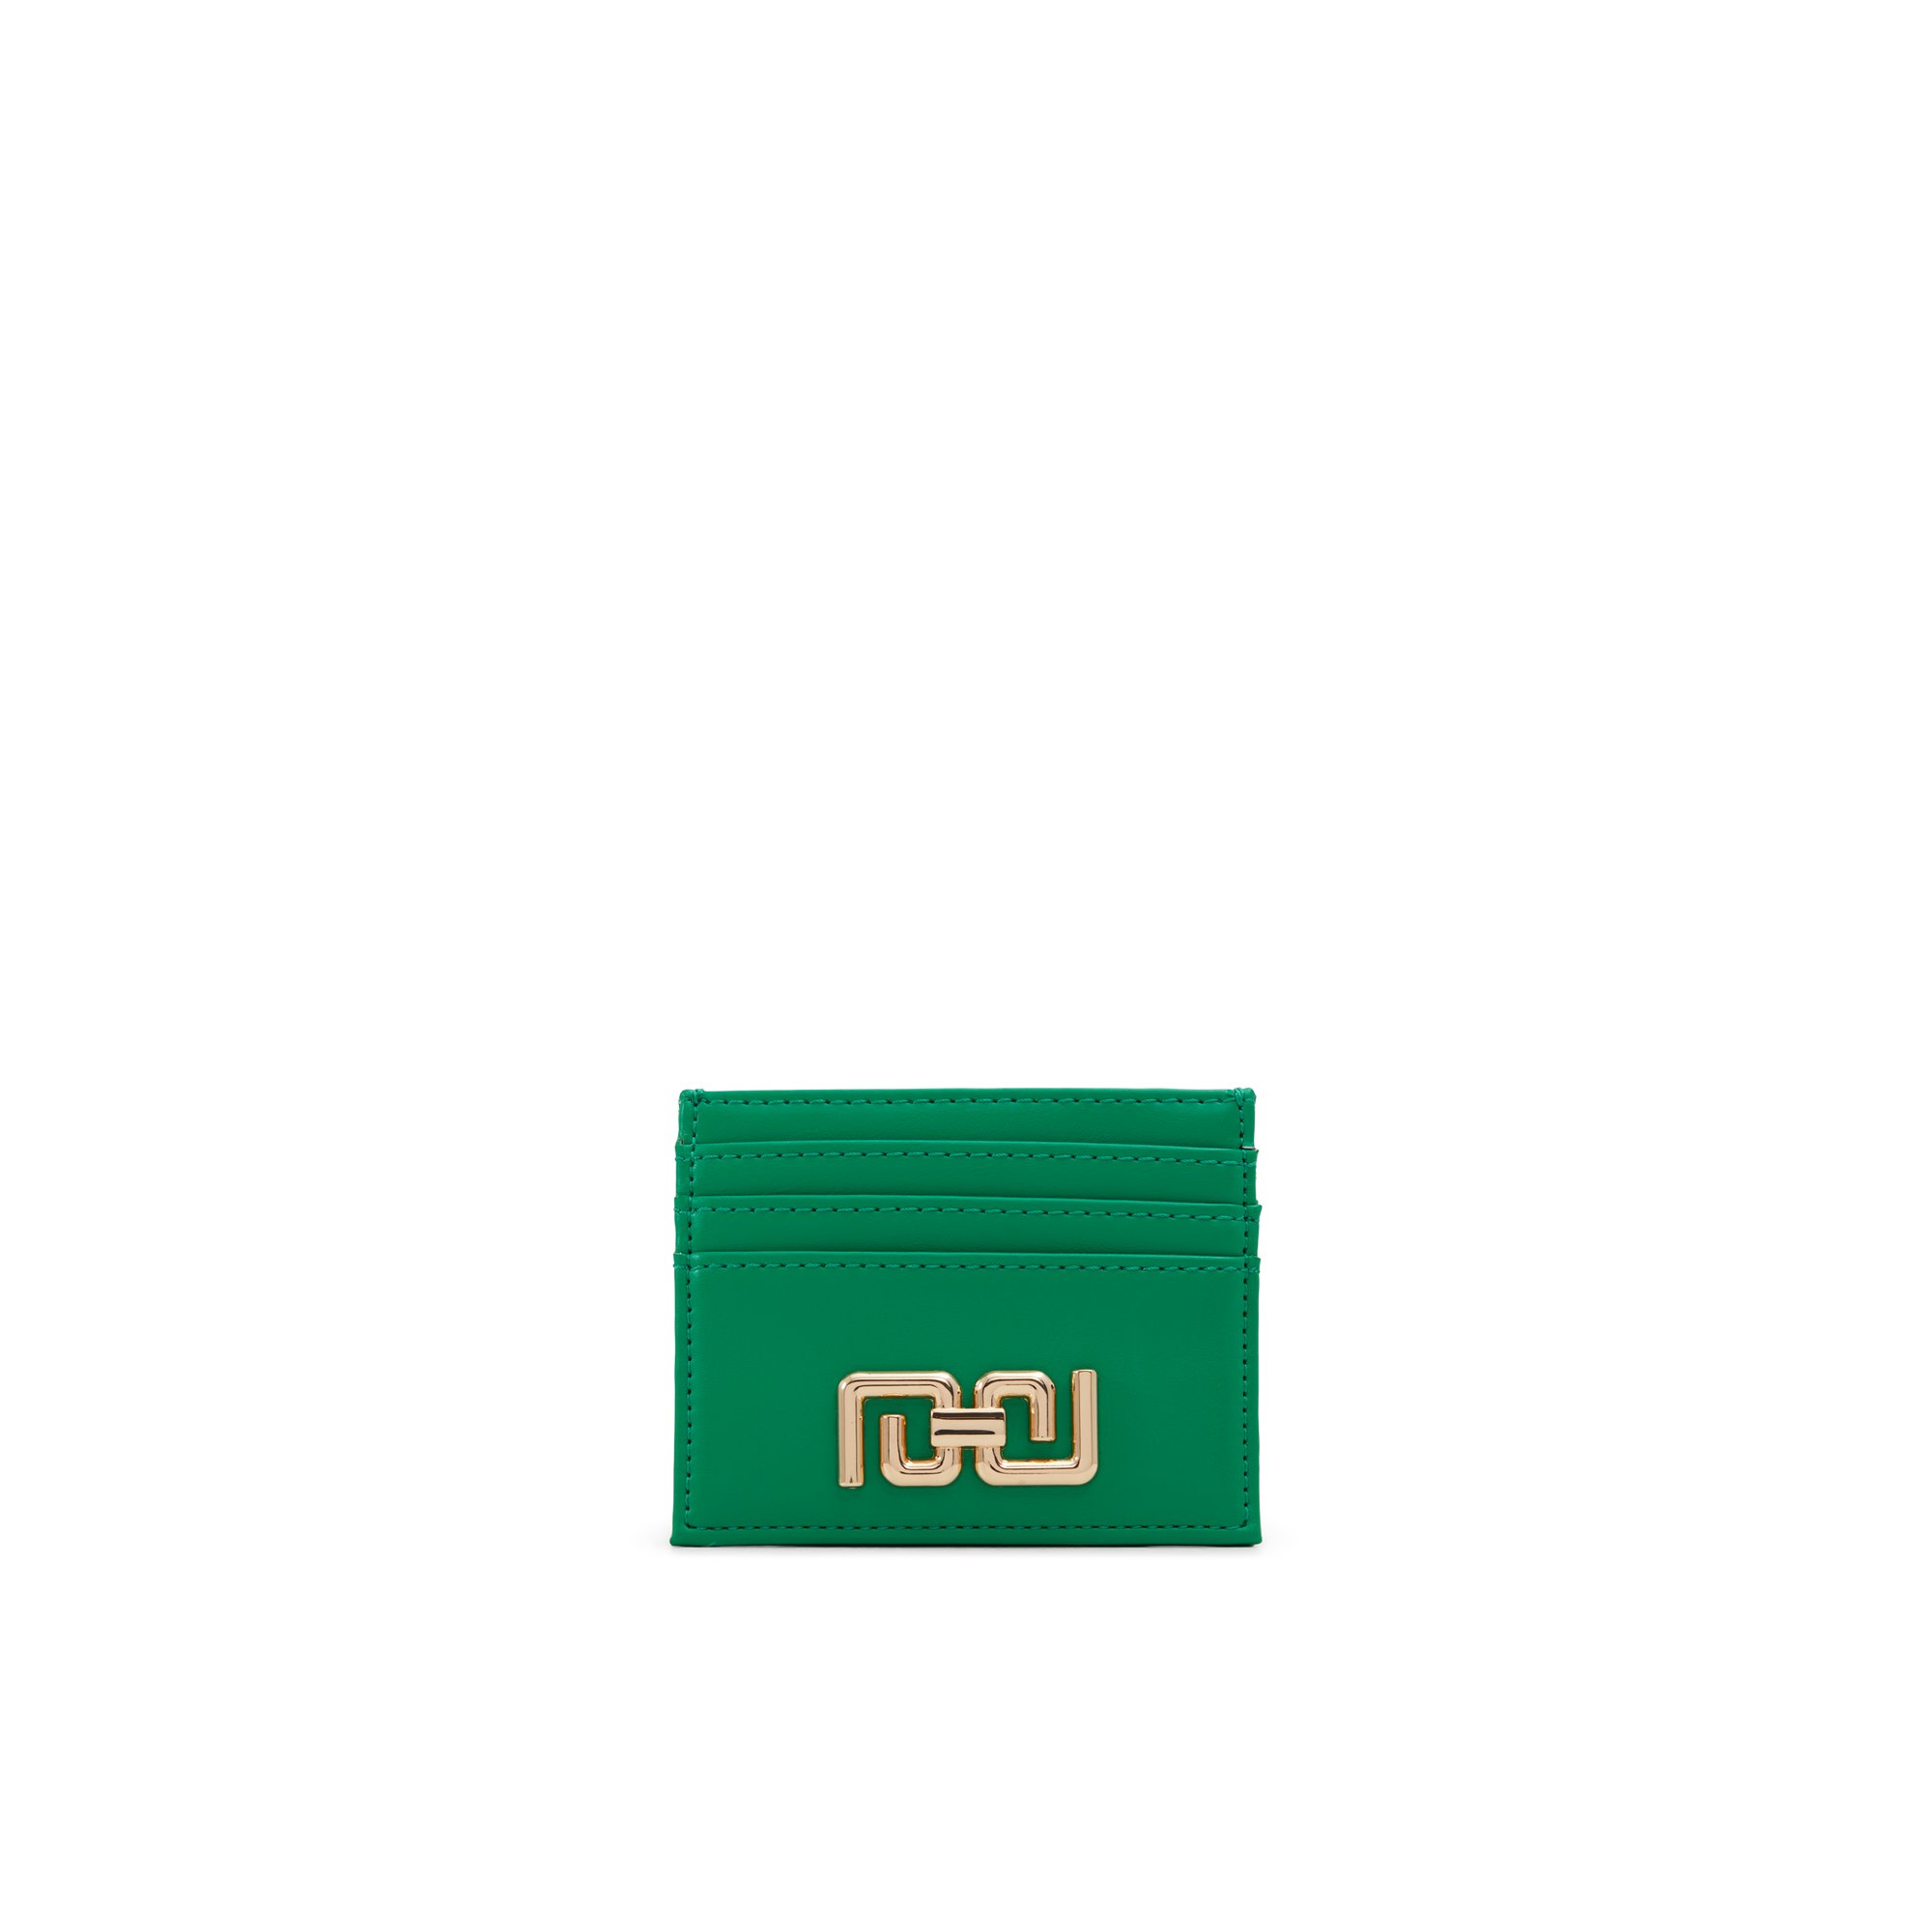 ALDO Cindee - Women's Wallet Handbag - Green